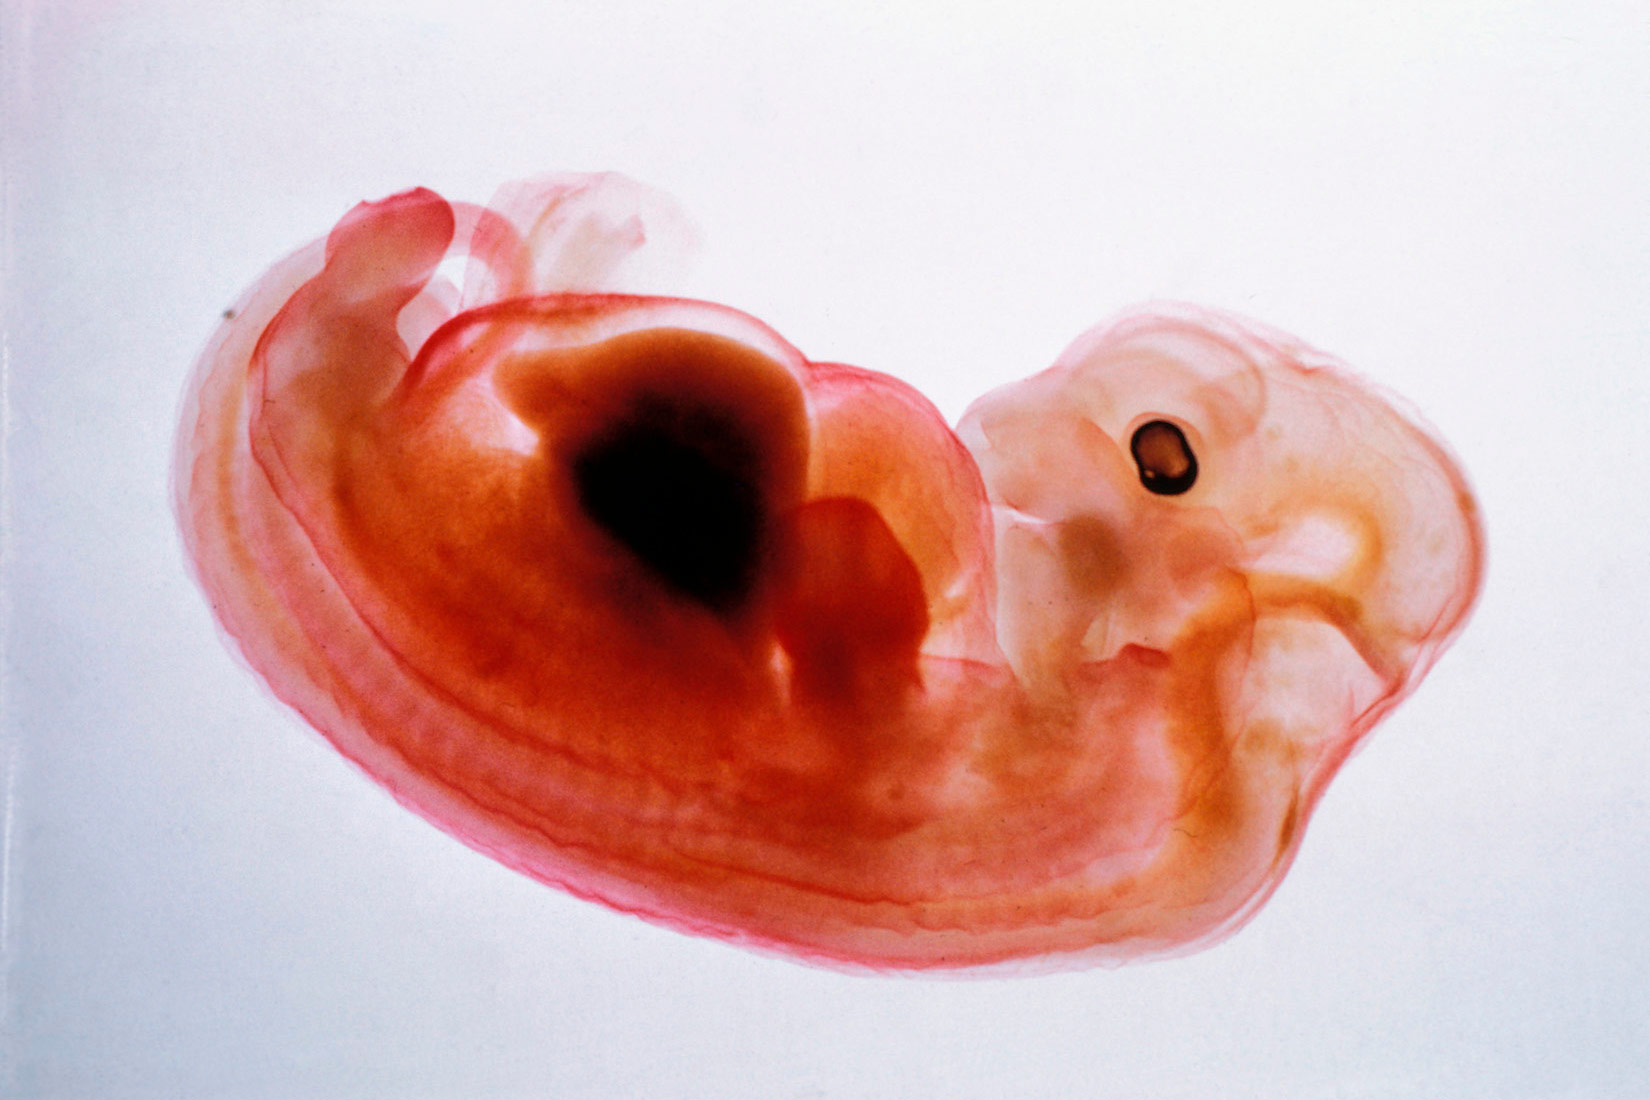 Fotografija pokazuje zametak svinje na vrlo svijetloj pozadini koja otkriva detalje unutar samog embrija. Zametak je na mnogim dijelovima proziran zbog čega se može uočiti kralježnica. Na zametku se nalaze formacije koje podsjećaju na rane stadije udova te tamno oko na glavi.